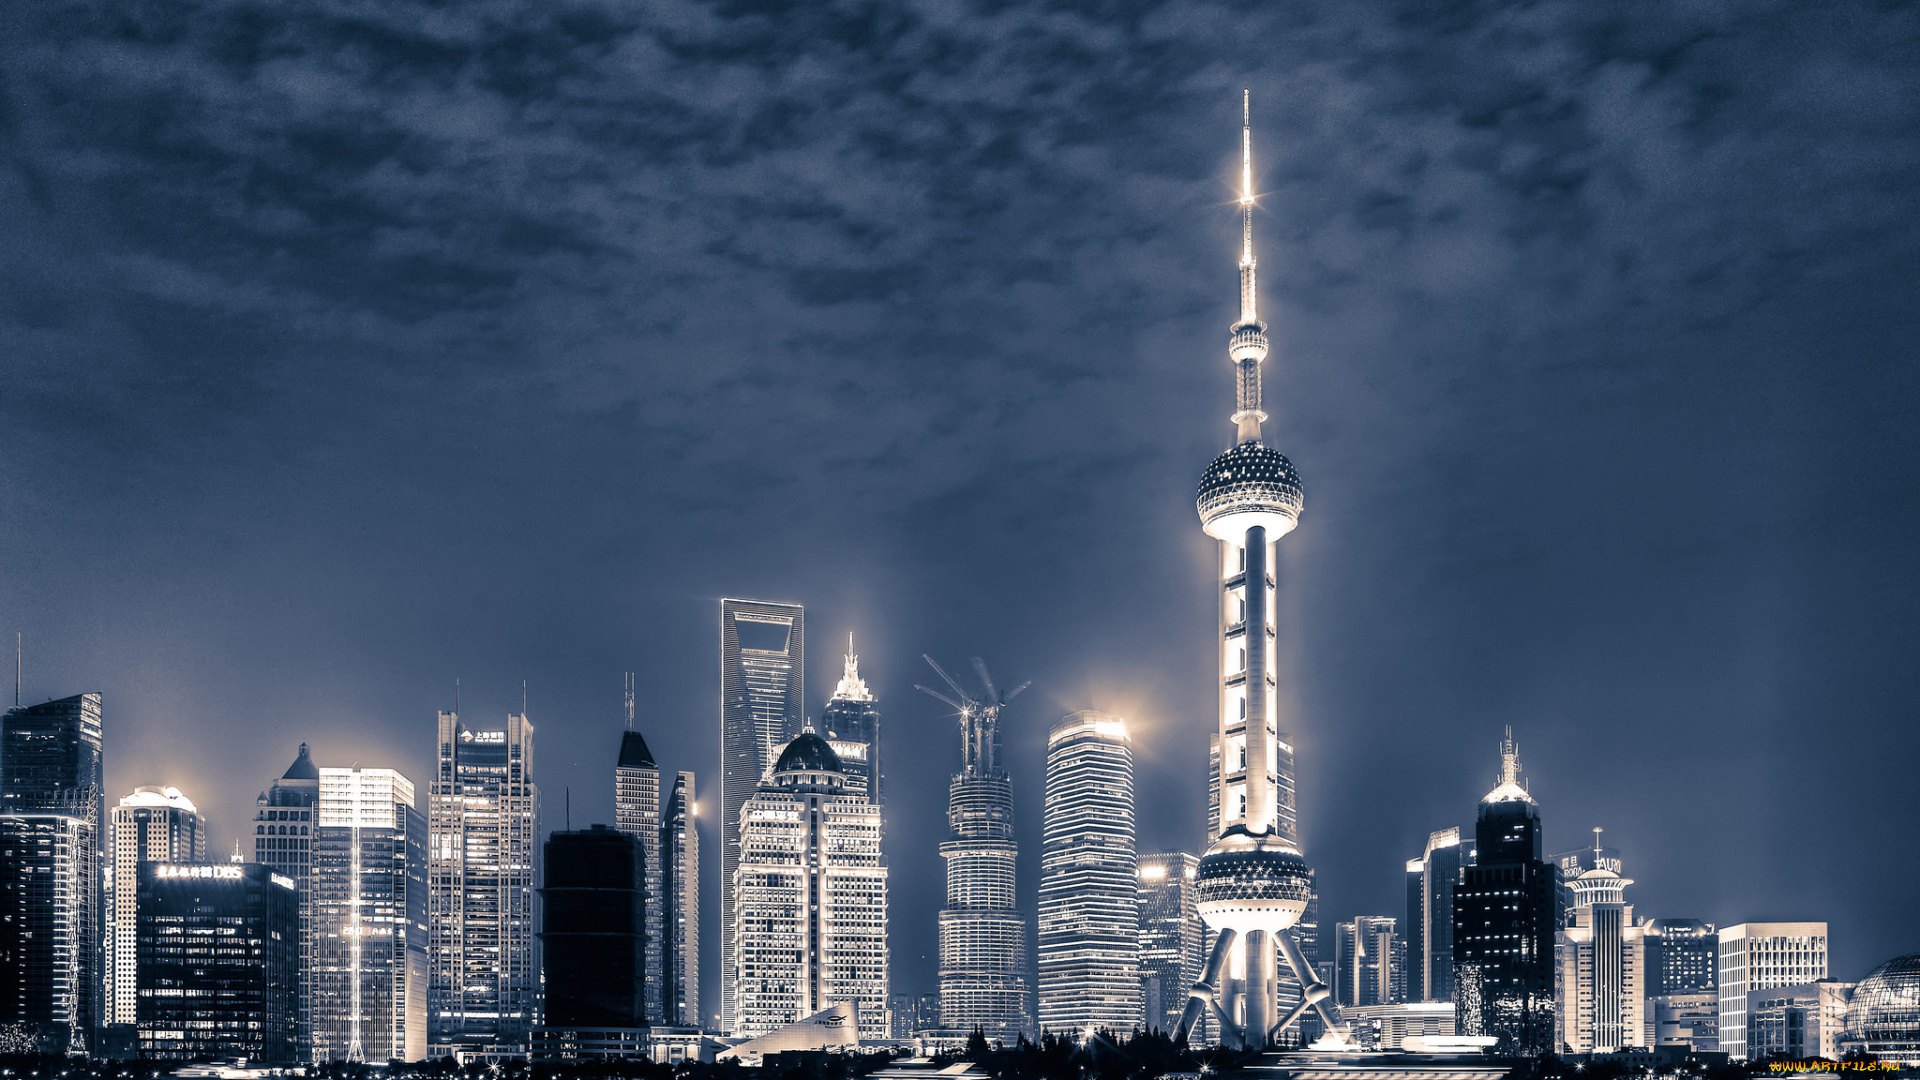 shanghai, china, города, шанхай, китай, ночной, город, здания, яхты, река